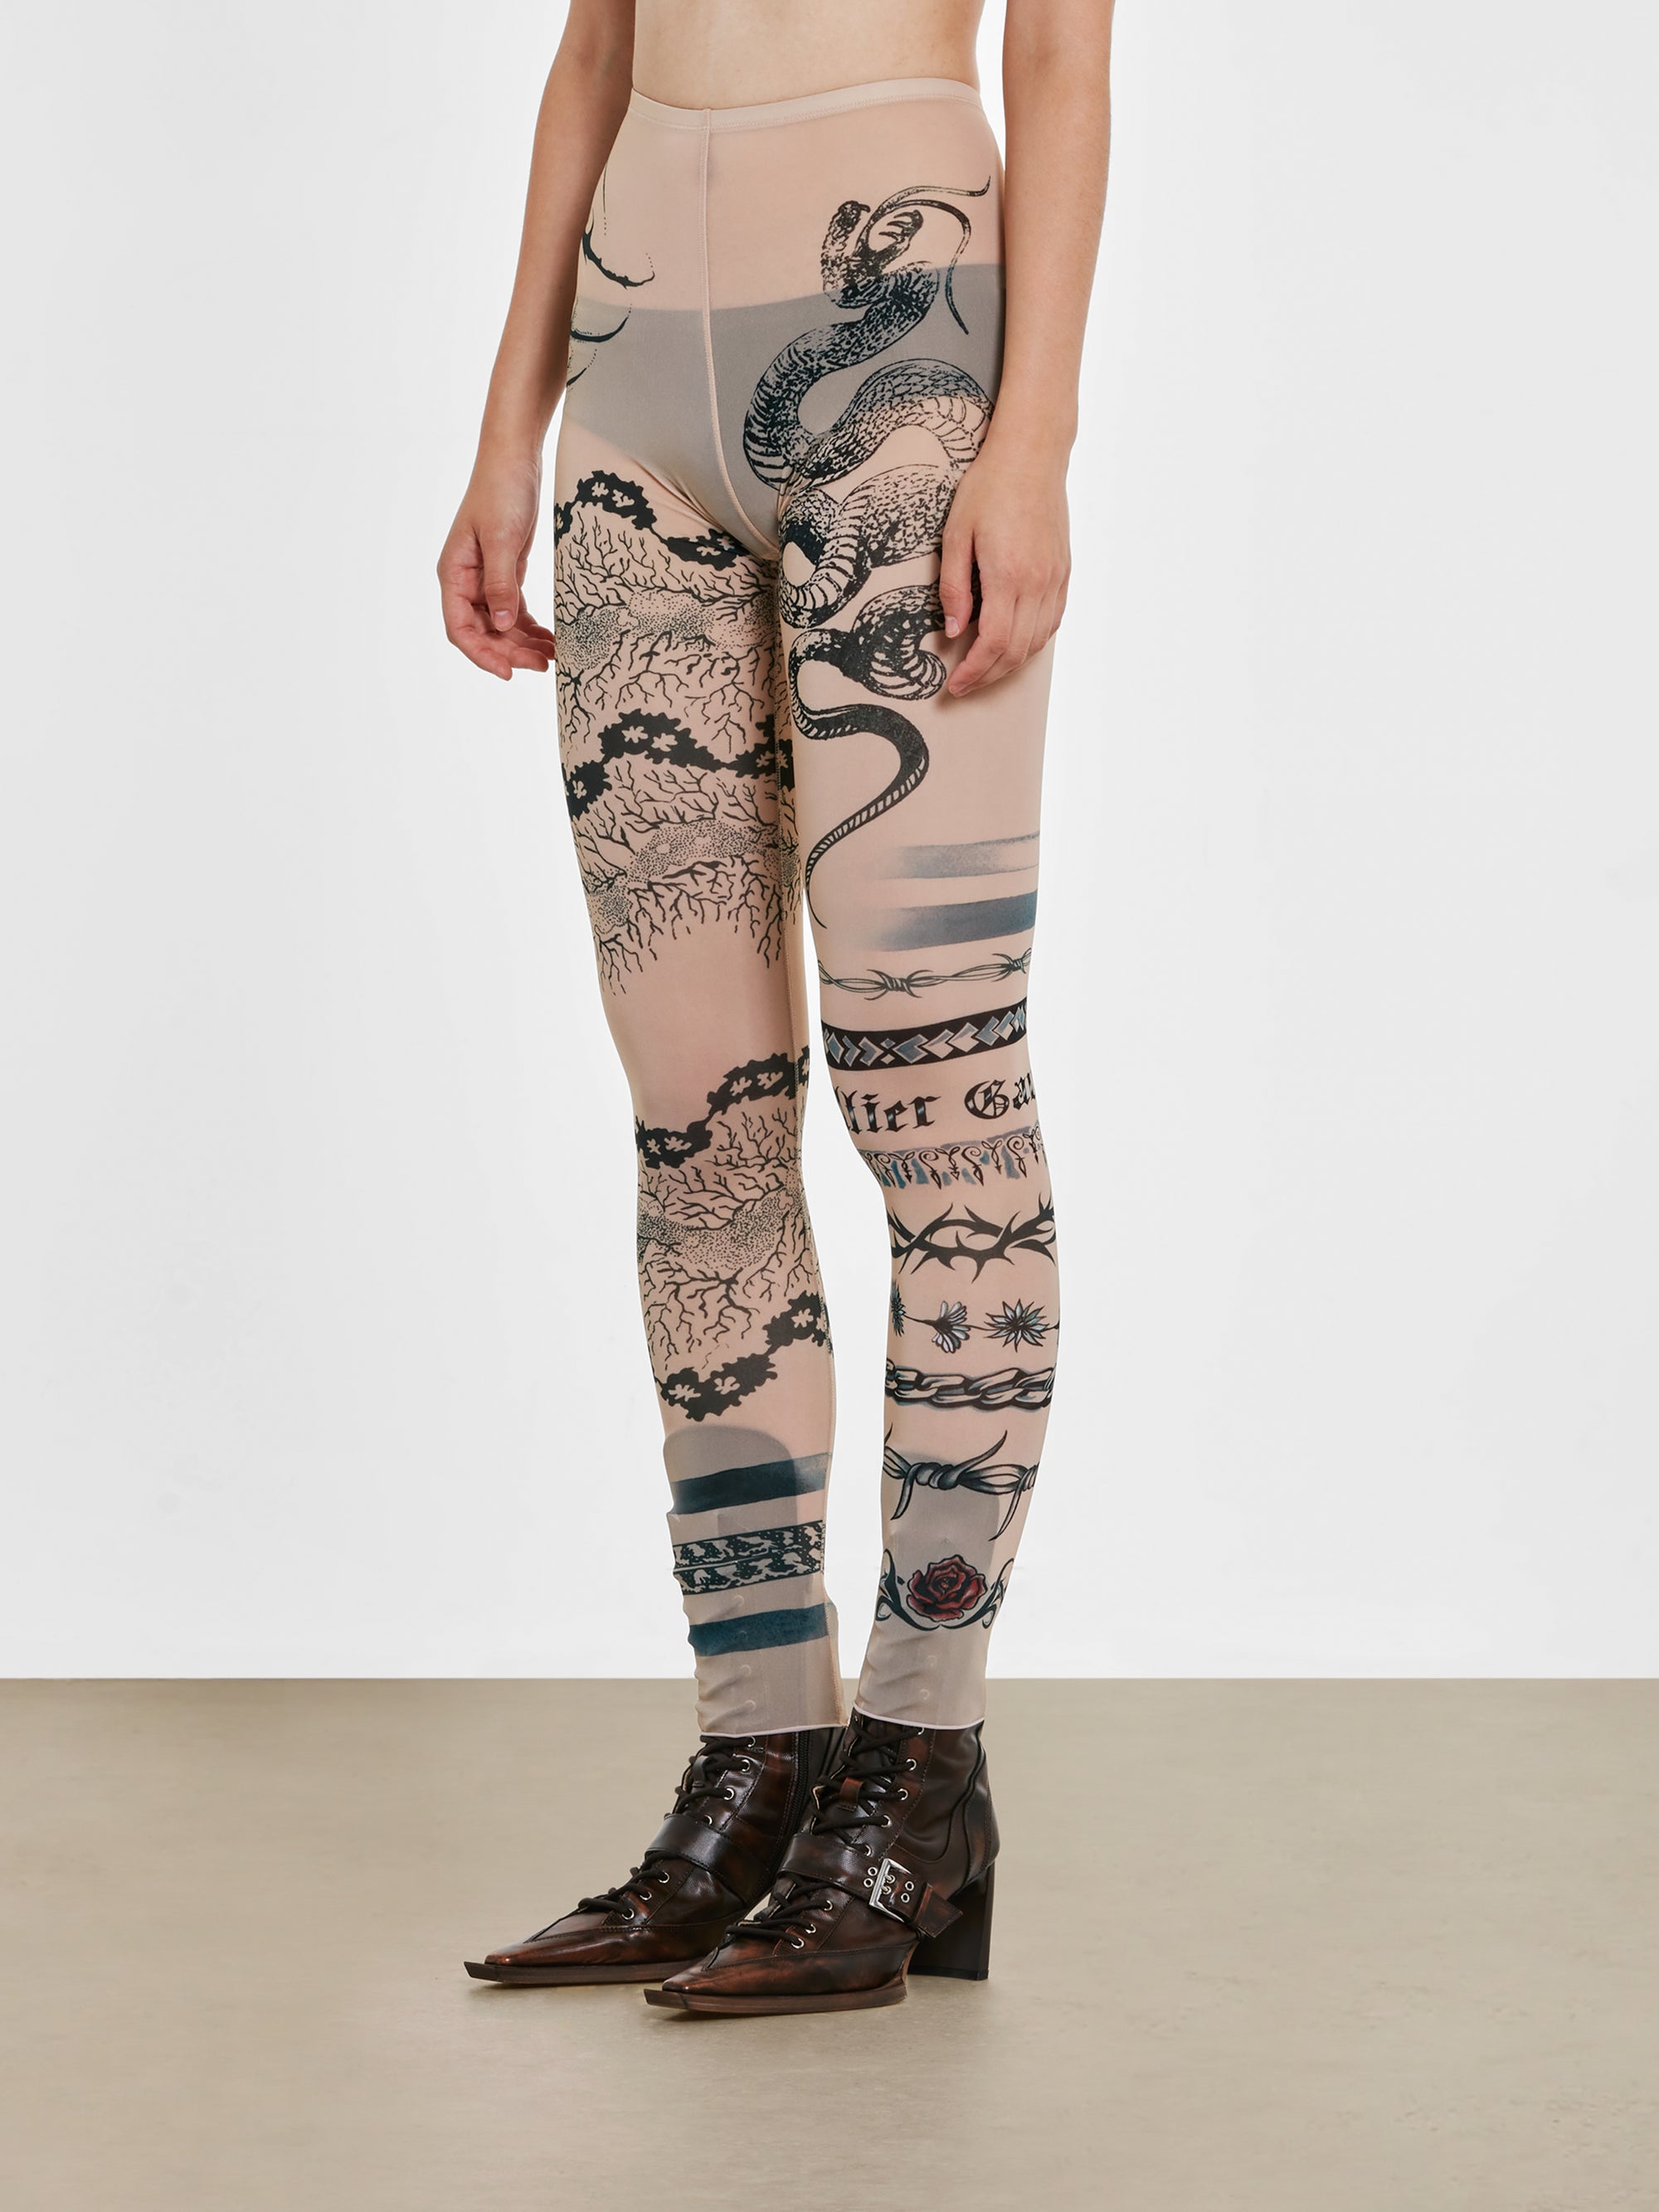 Jean Paul Gaultier - KNWLS Women’s Trompe L’Oeil Tattoo Print Leggings - (Nude/Grey/Black) view 2